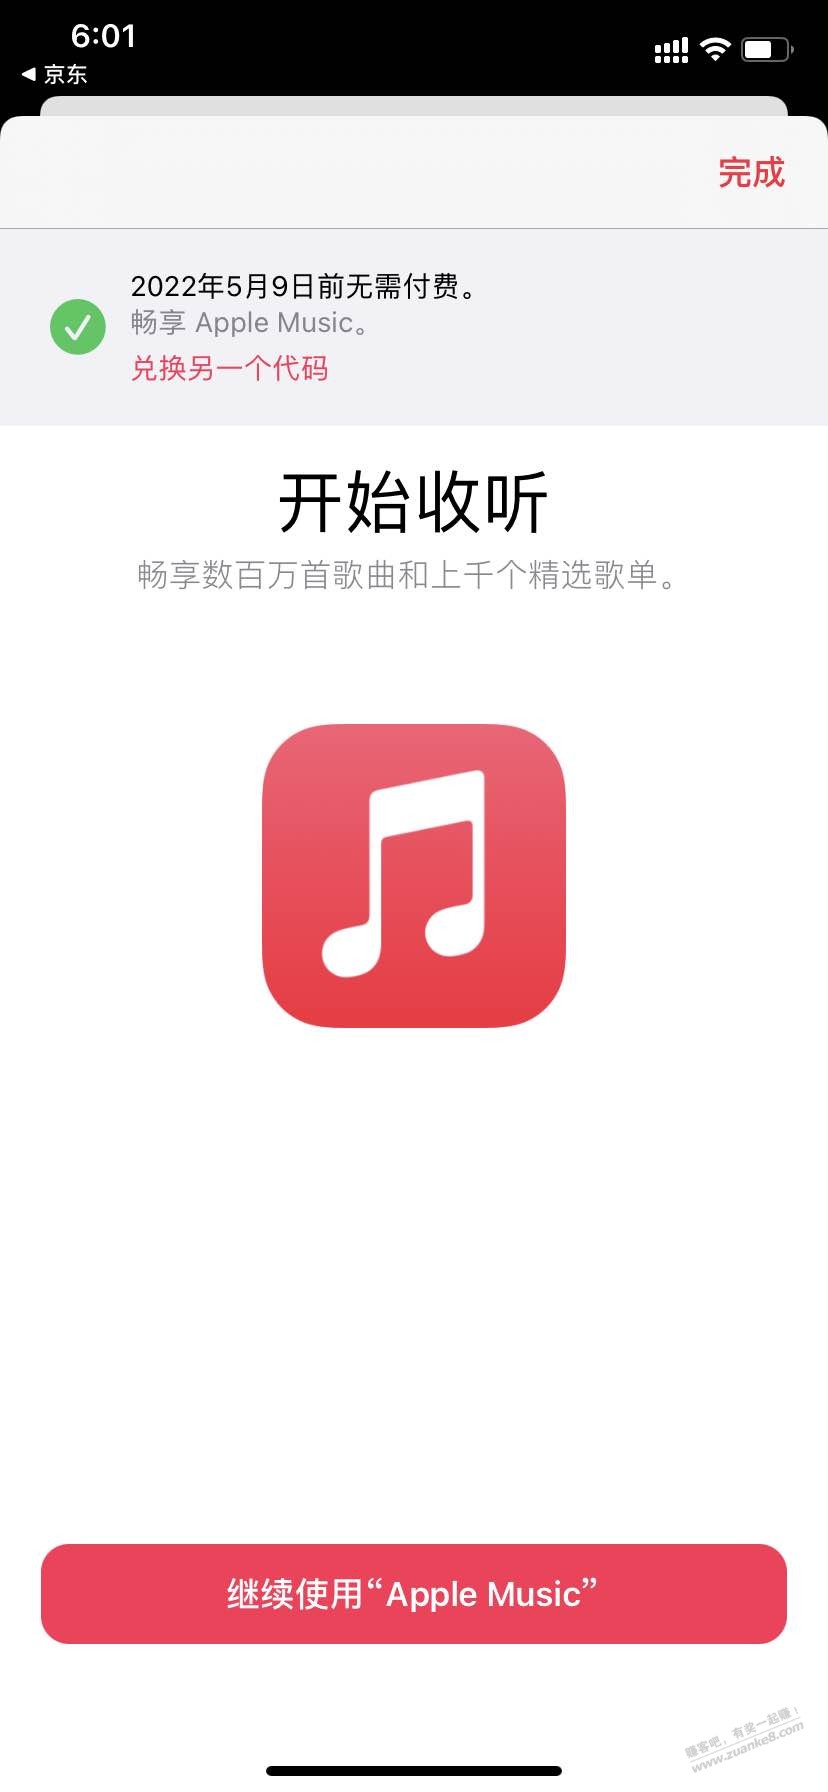 Apple music免费 老用户可用 亲测-惠小助(52huixz.com)